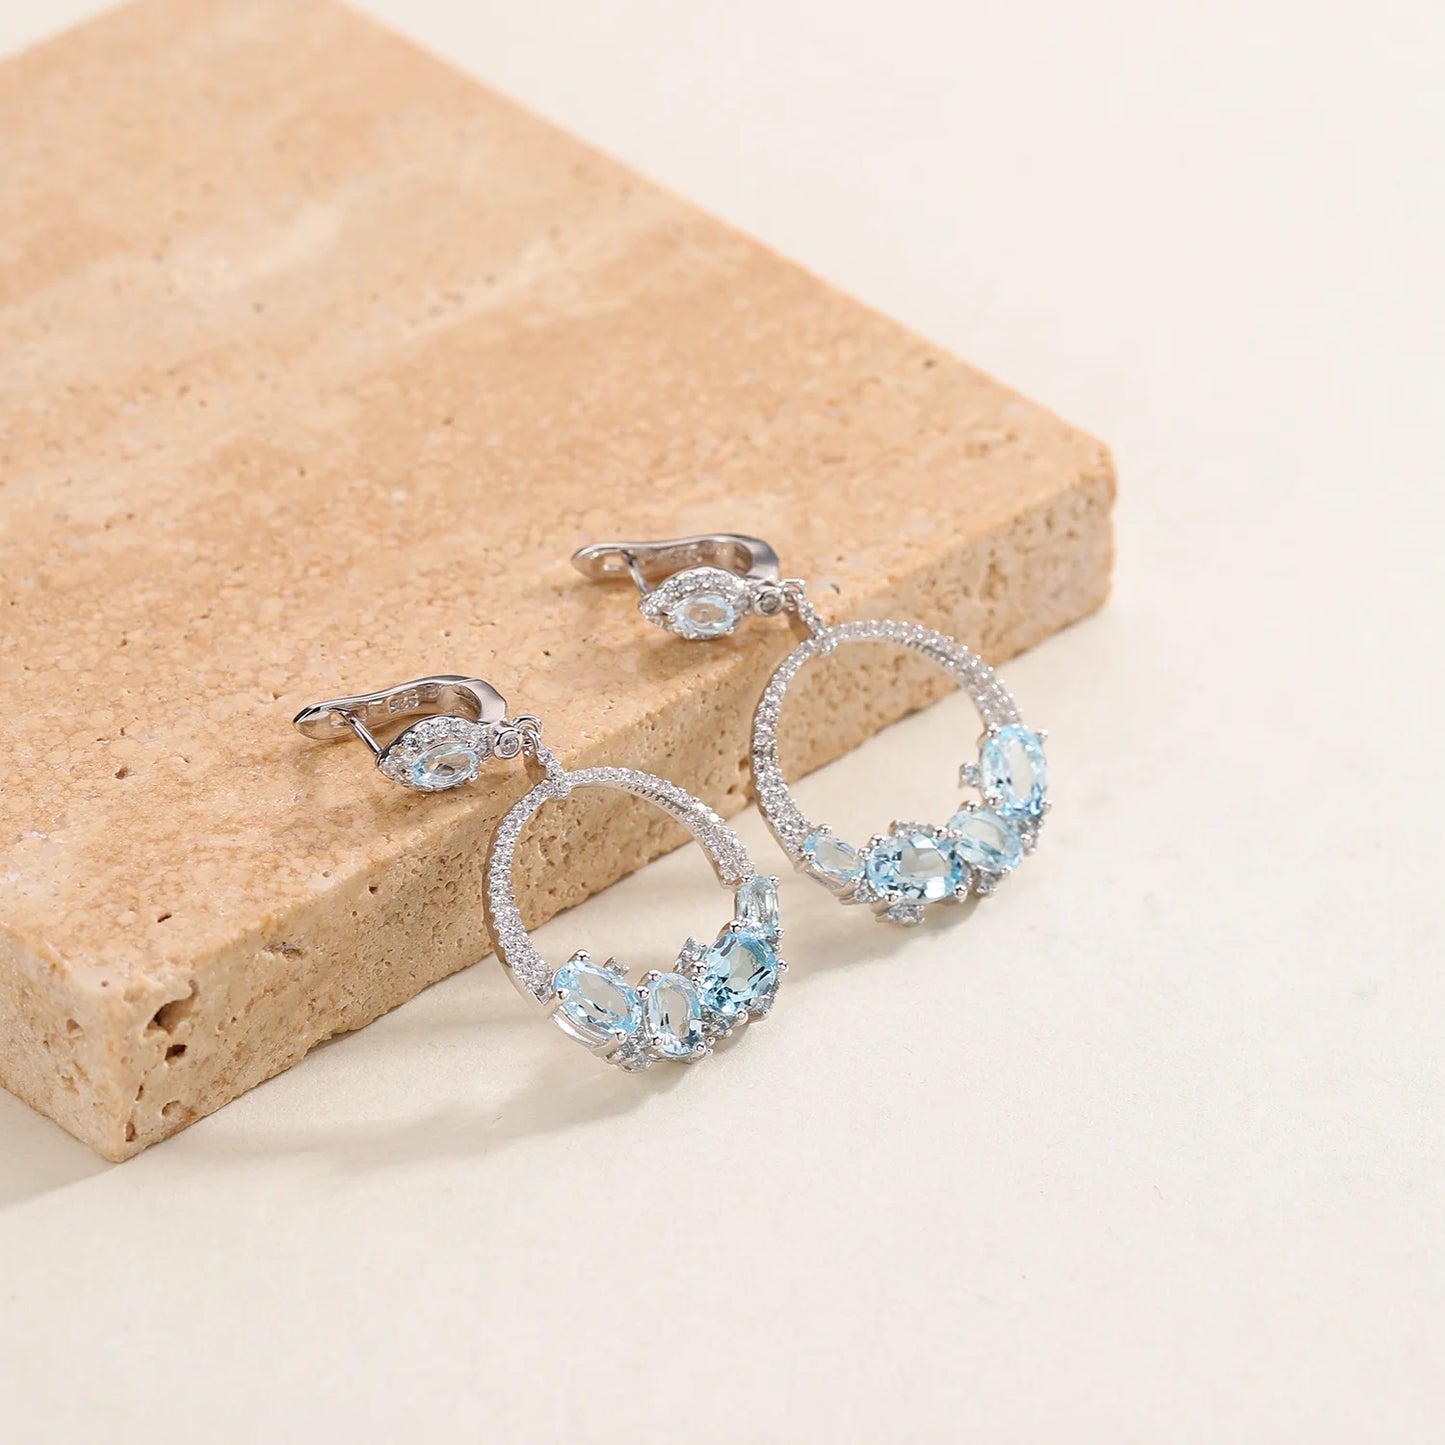 Sky Blue Topaz Statement Dangle Earrings in 925 Sterling Silver